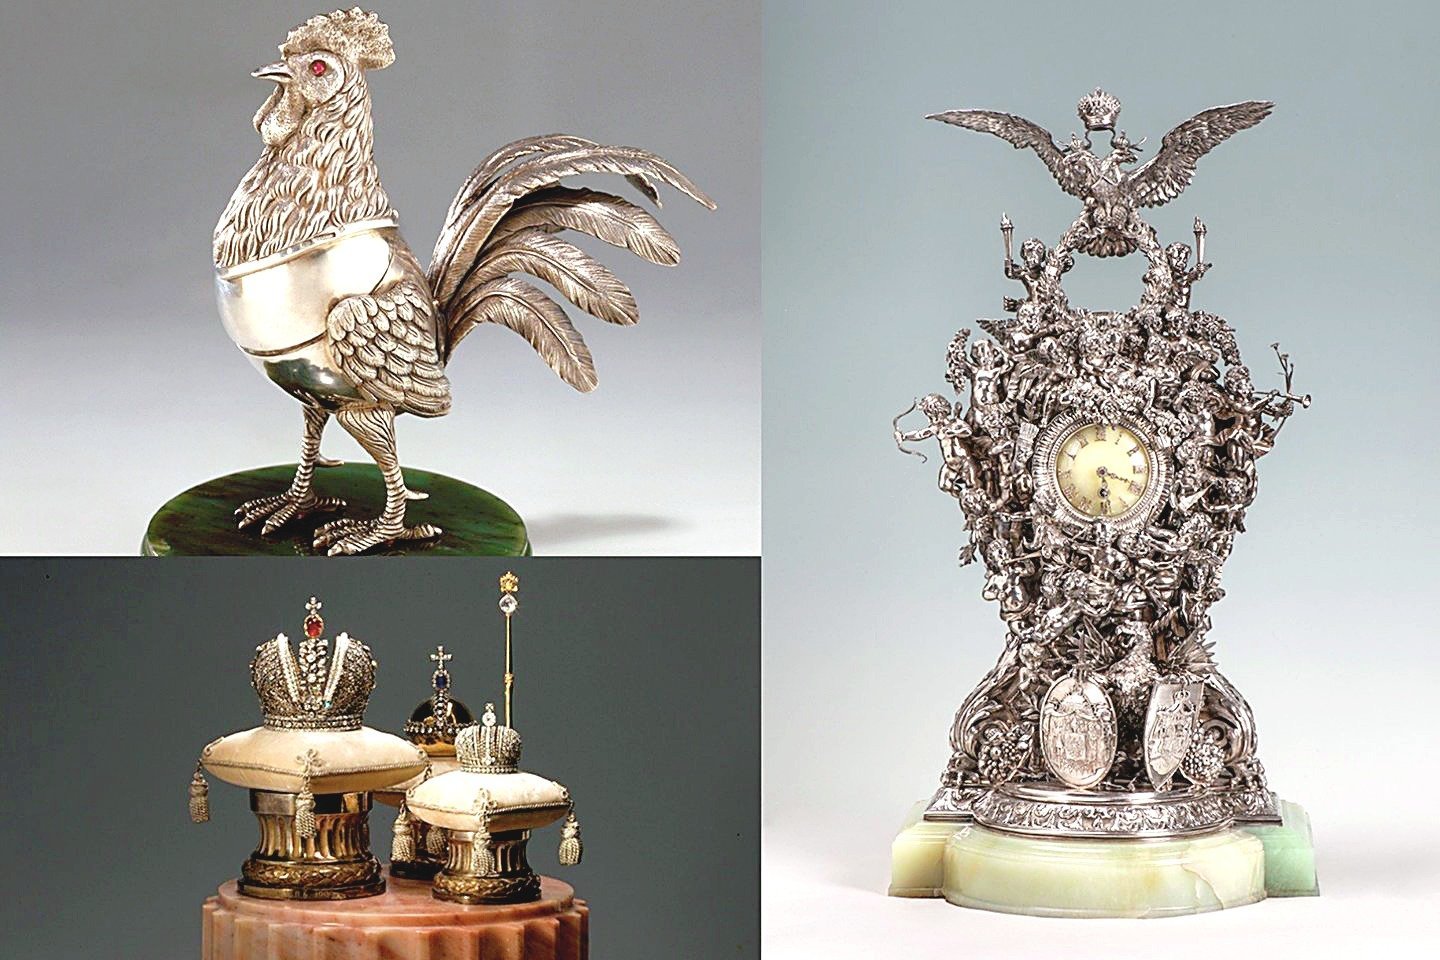 Parašuose prie eksponatų ir parodos kataloge ginčytinus darbus Ermitažas įvardijo kaip originalius „Faberge“ kūrinius ir imperatoriškąsias dovanas. Bet muziejus atsisakė patvirtinti, ar jie tikri.<br>Ermitažo ir „123rf.com“ nuotr.